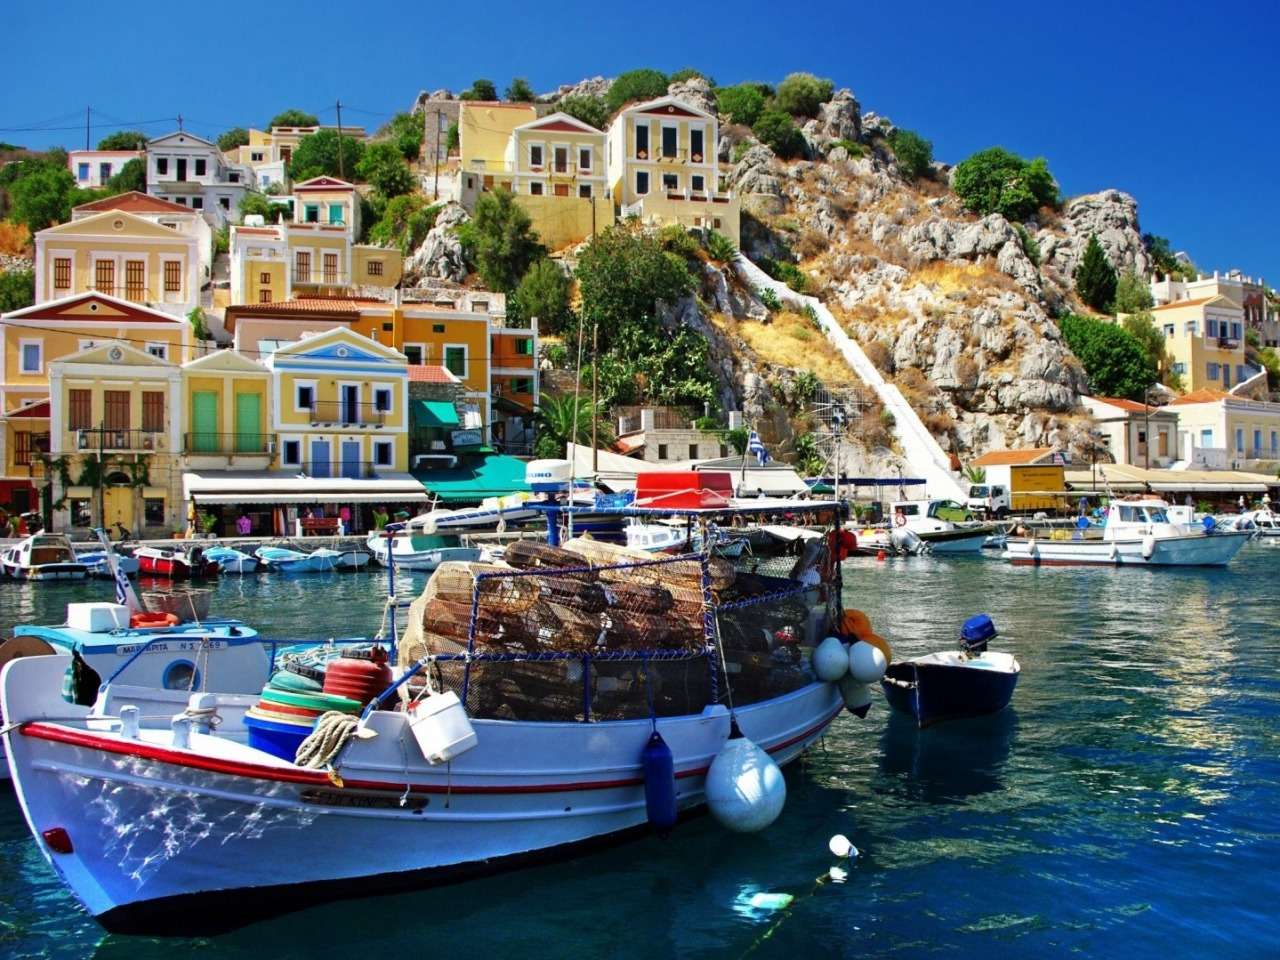 Греция-красивые дома на скале, чудо природы пазл онлайн